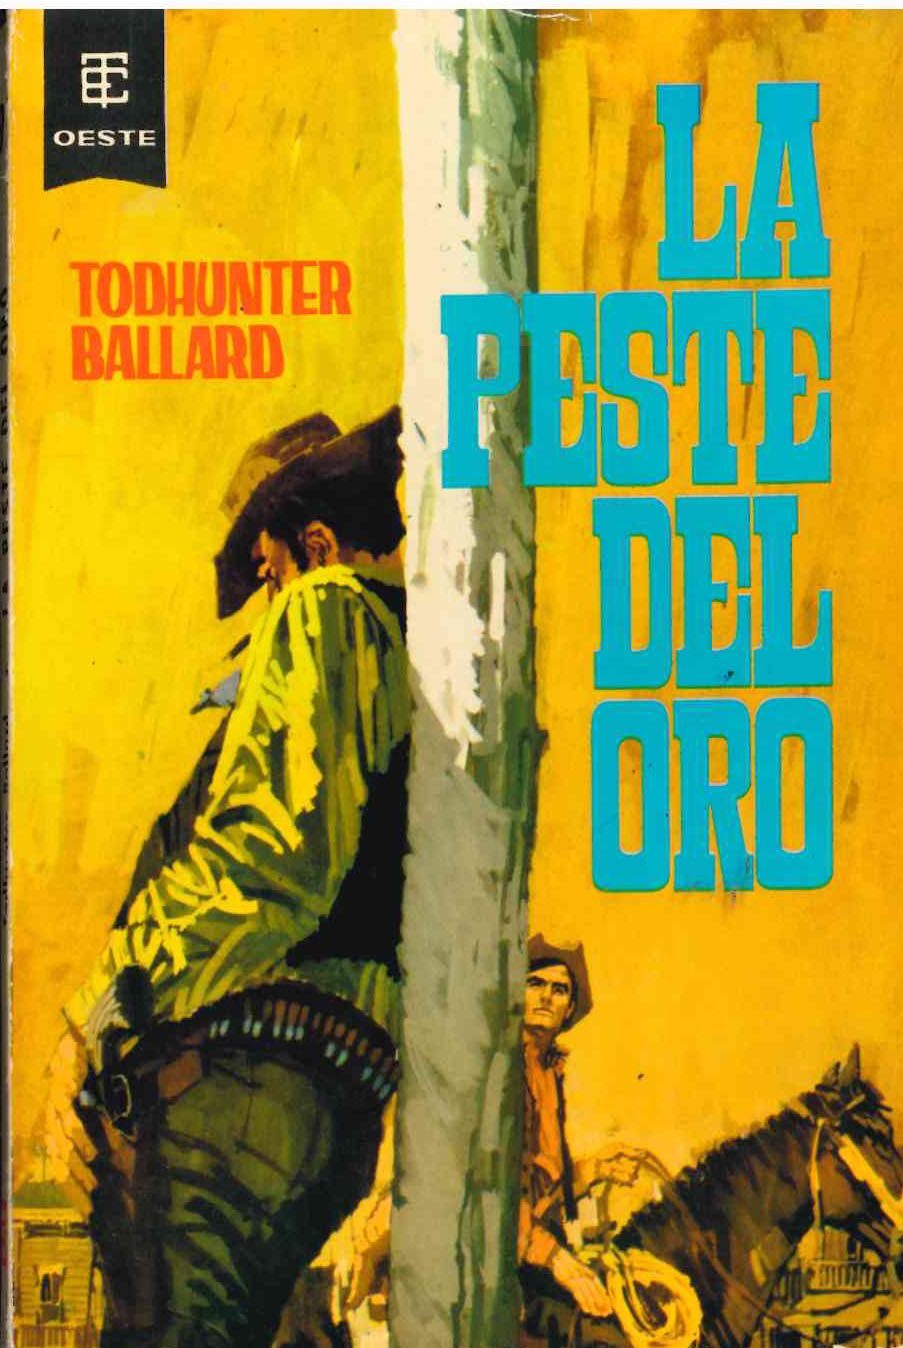 Toray oeste nº 99. La peste del oro por Todhunter Ballard. Toray 1963